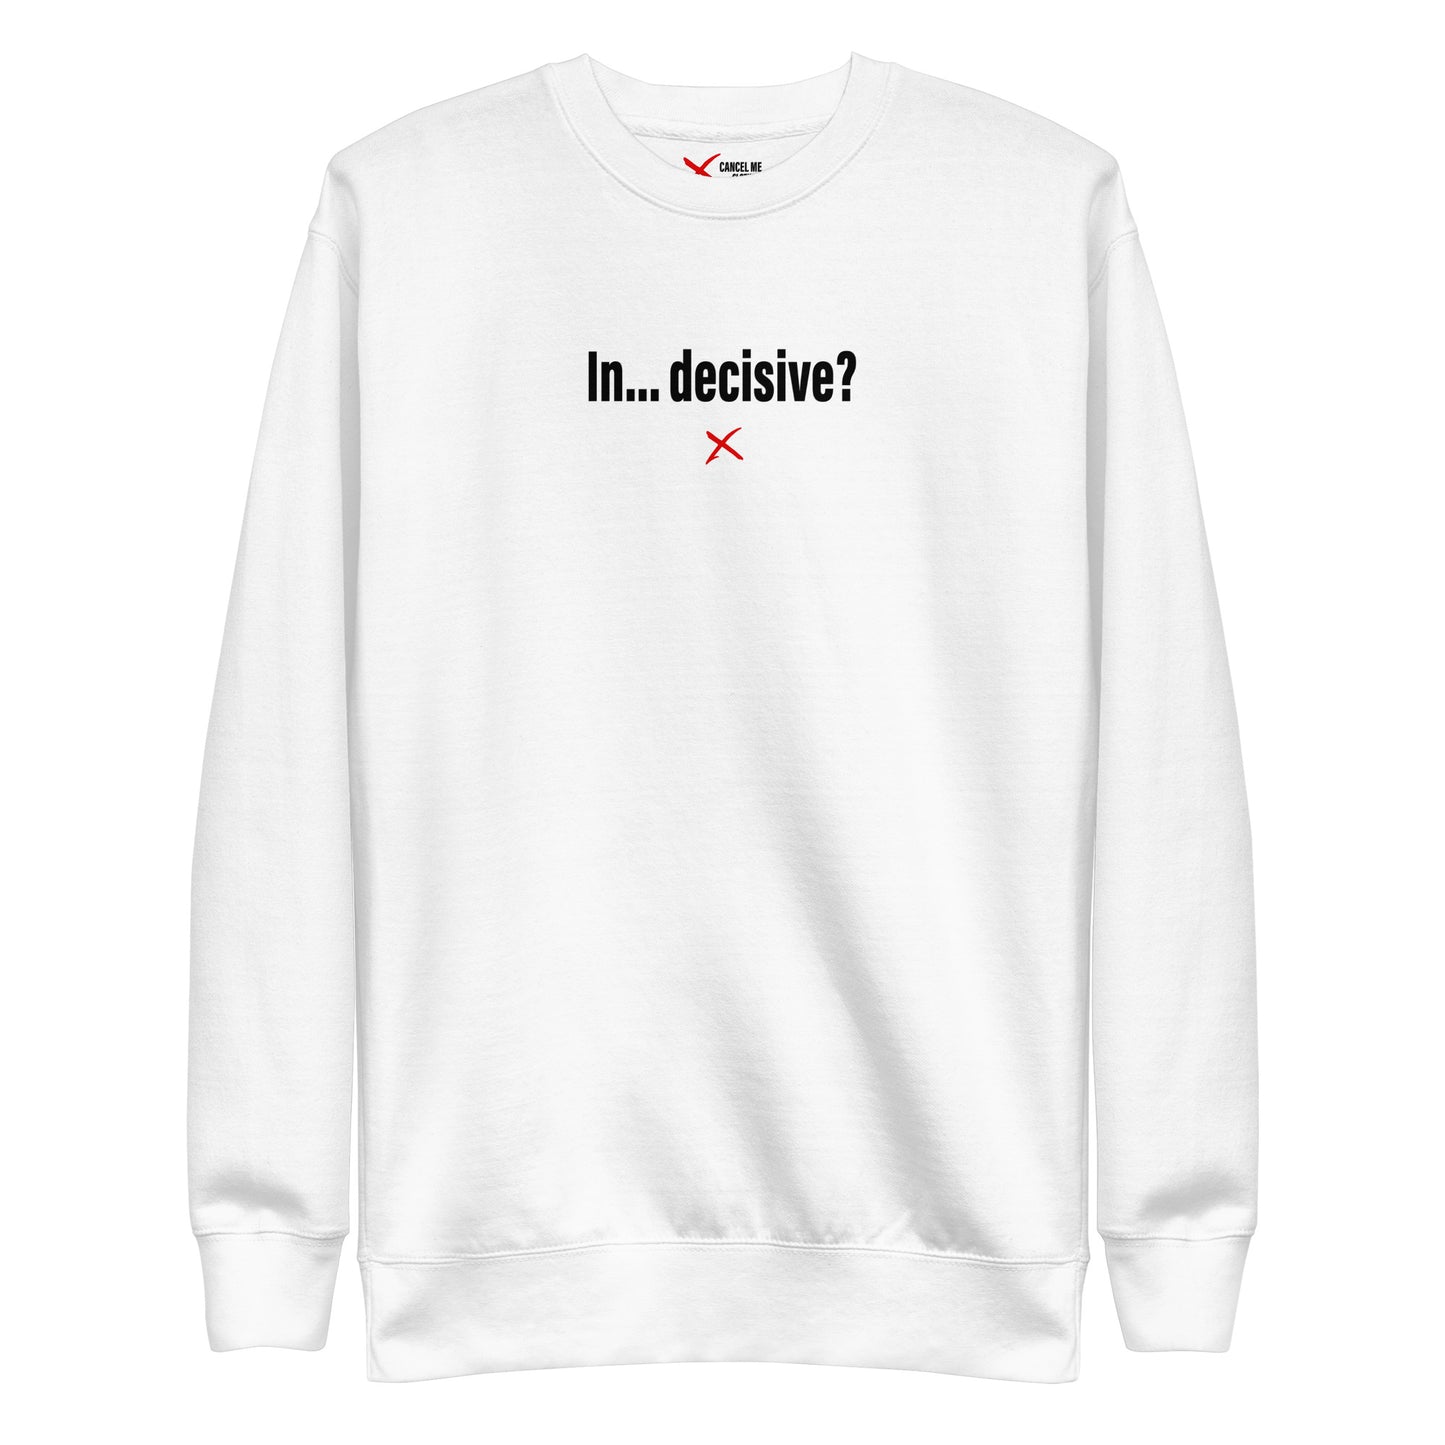 In... decisive? - Sweatshirt